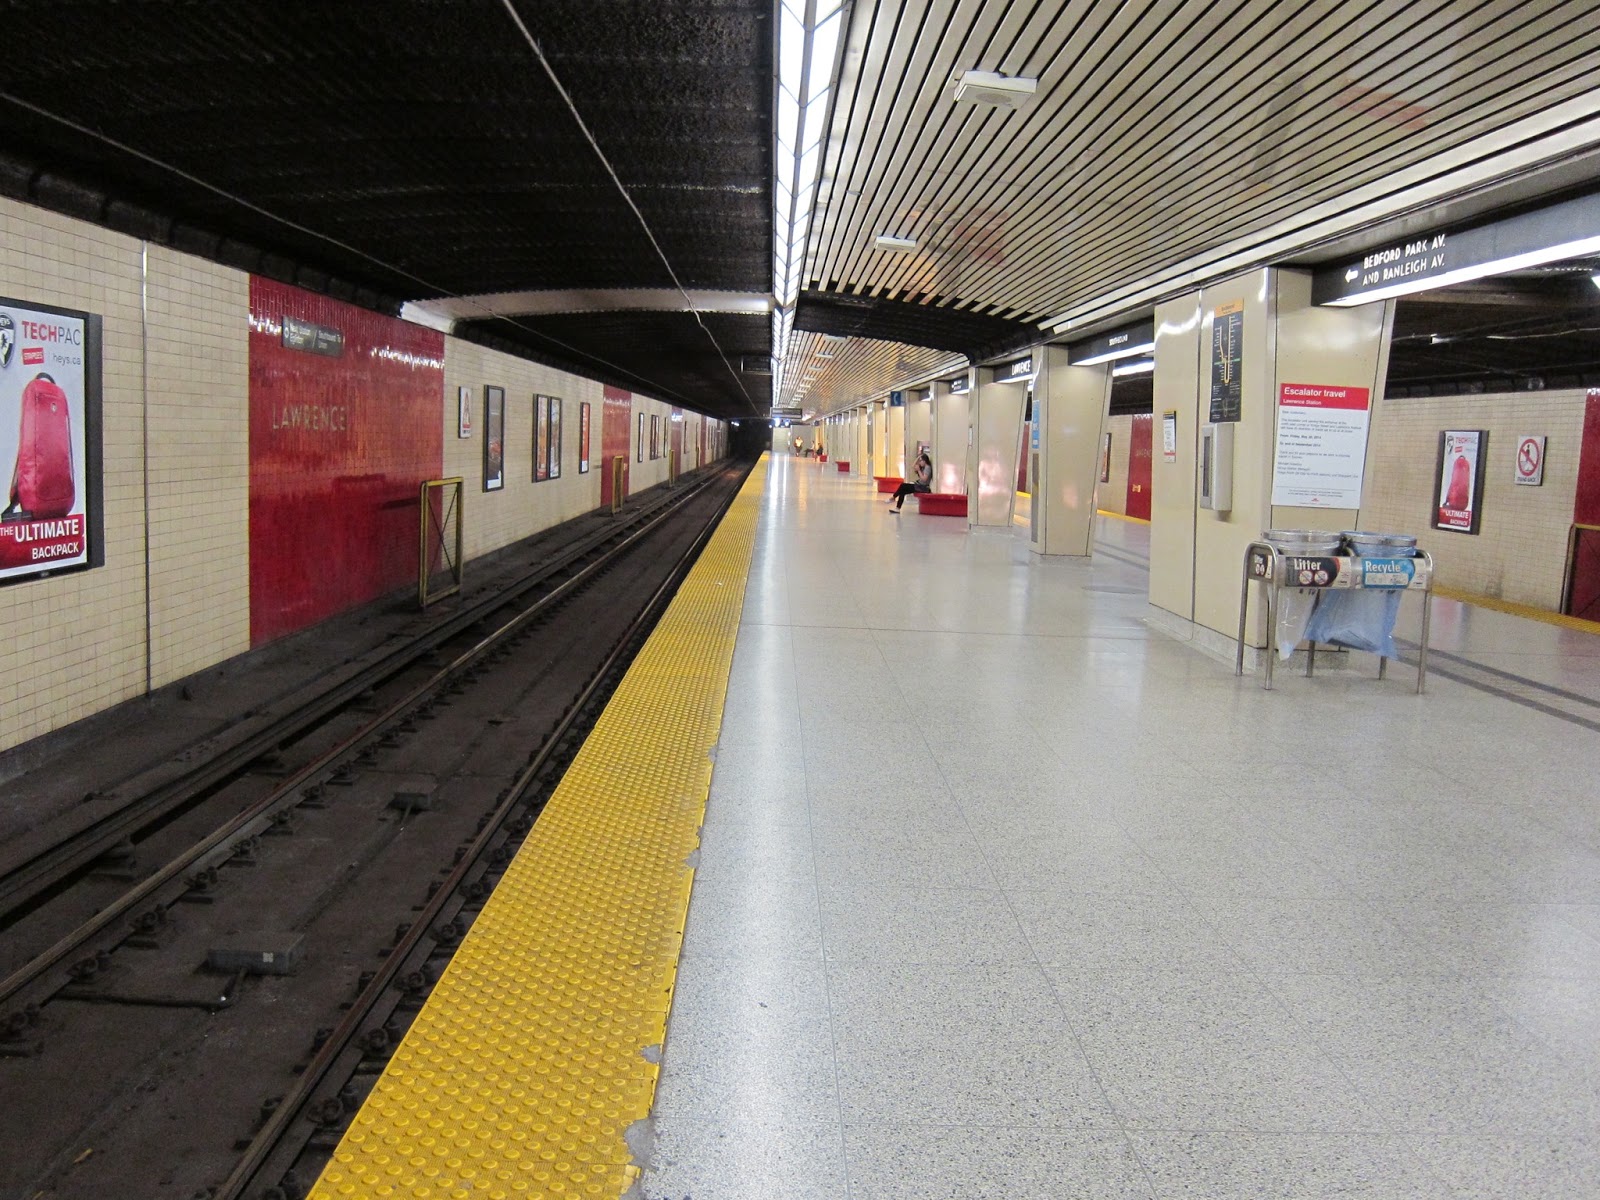 Lawrence station platform